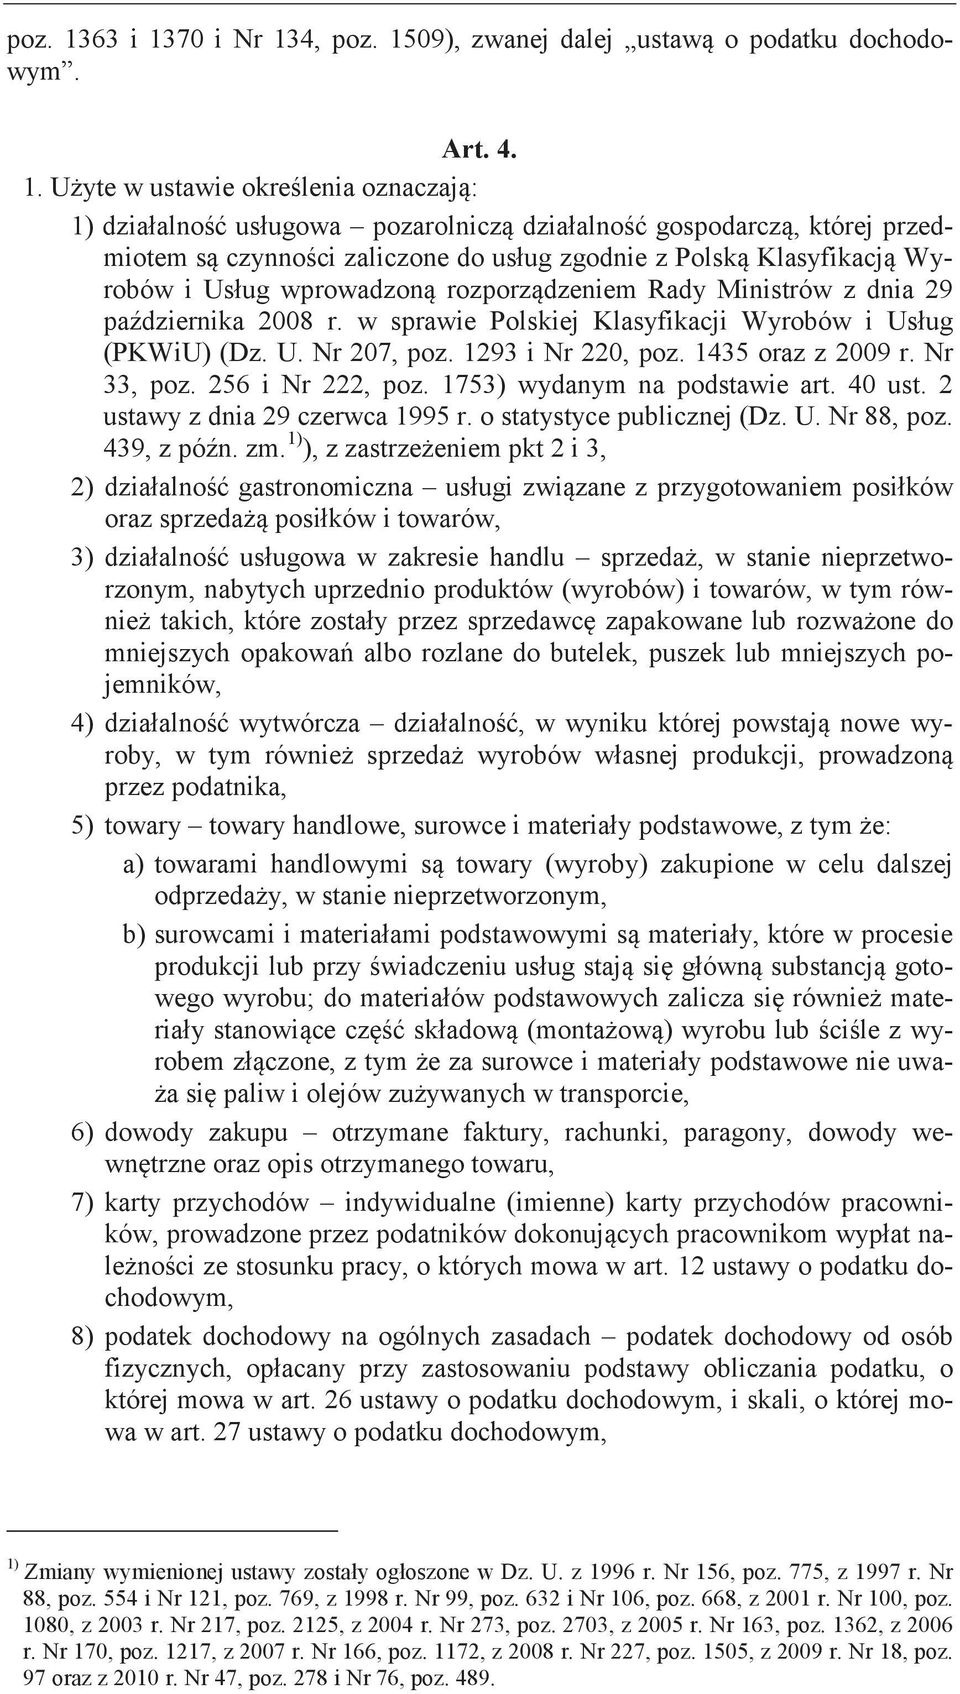 2 ustawy z dnia 29 czerwca 1995 r. o statystyce publicznej (Dz. U. Nr 88, poz. 439, z zm.